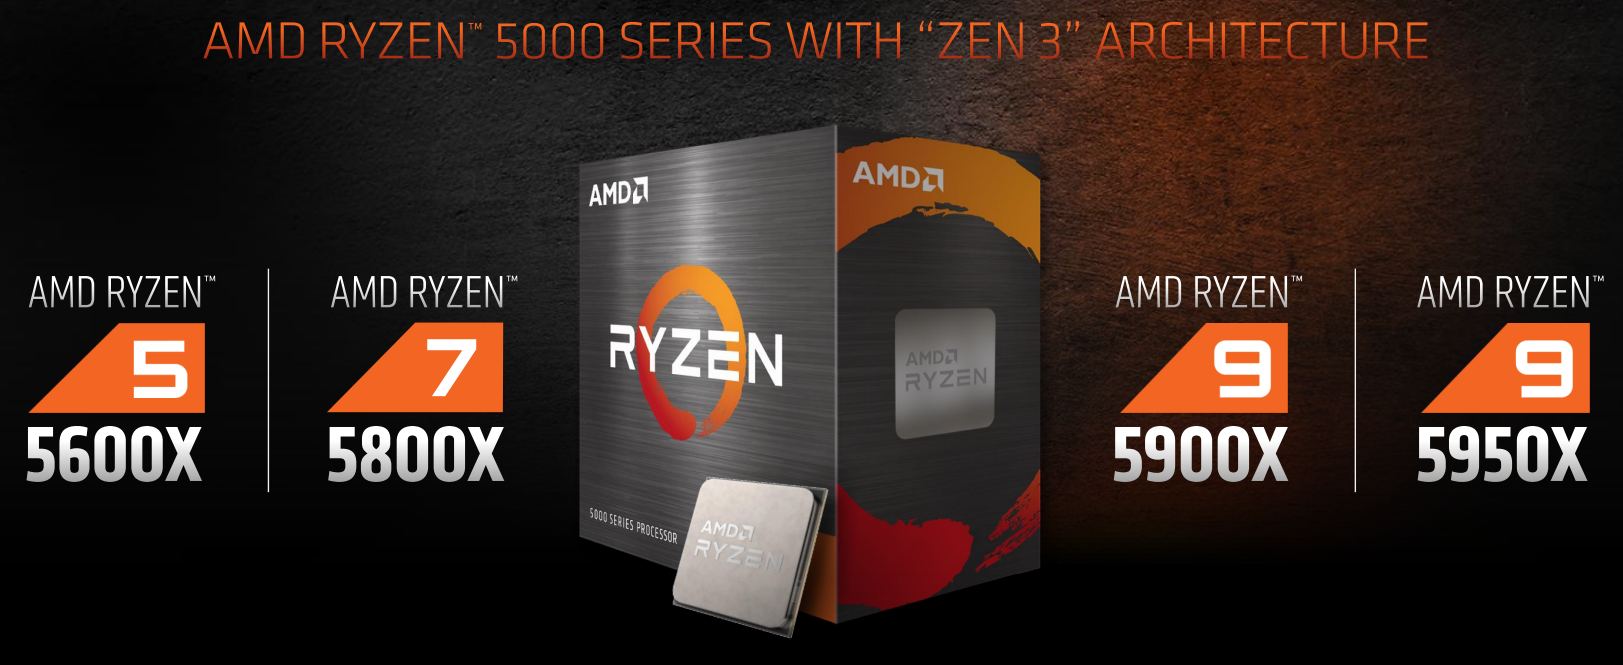 AMD Ryzen 9 5900X and Ryzen 5 5600X CPU Review - Legit Reviews AMD